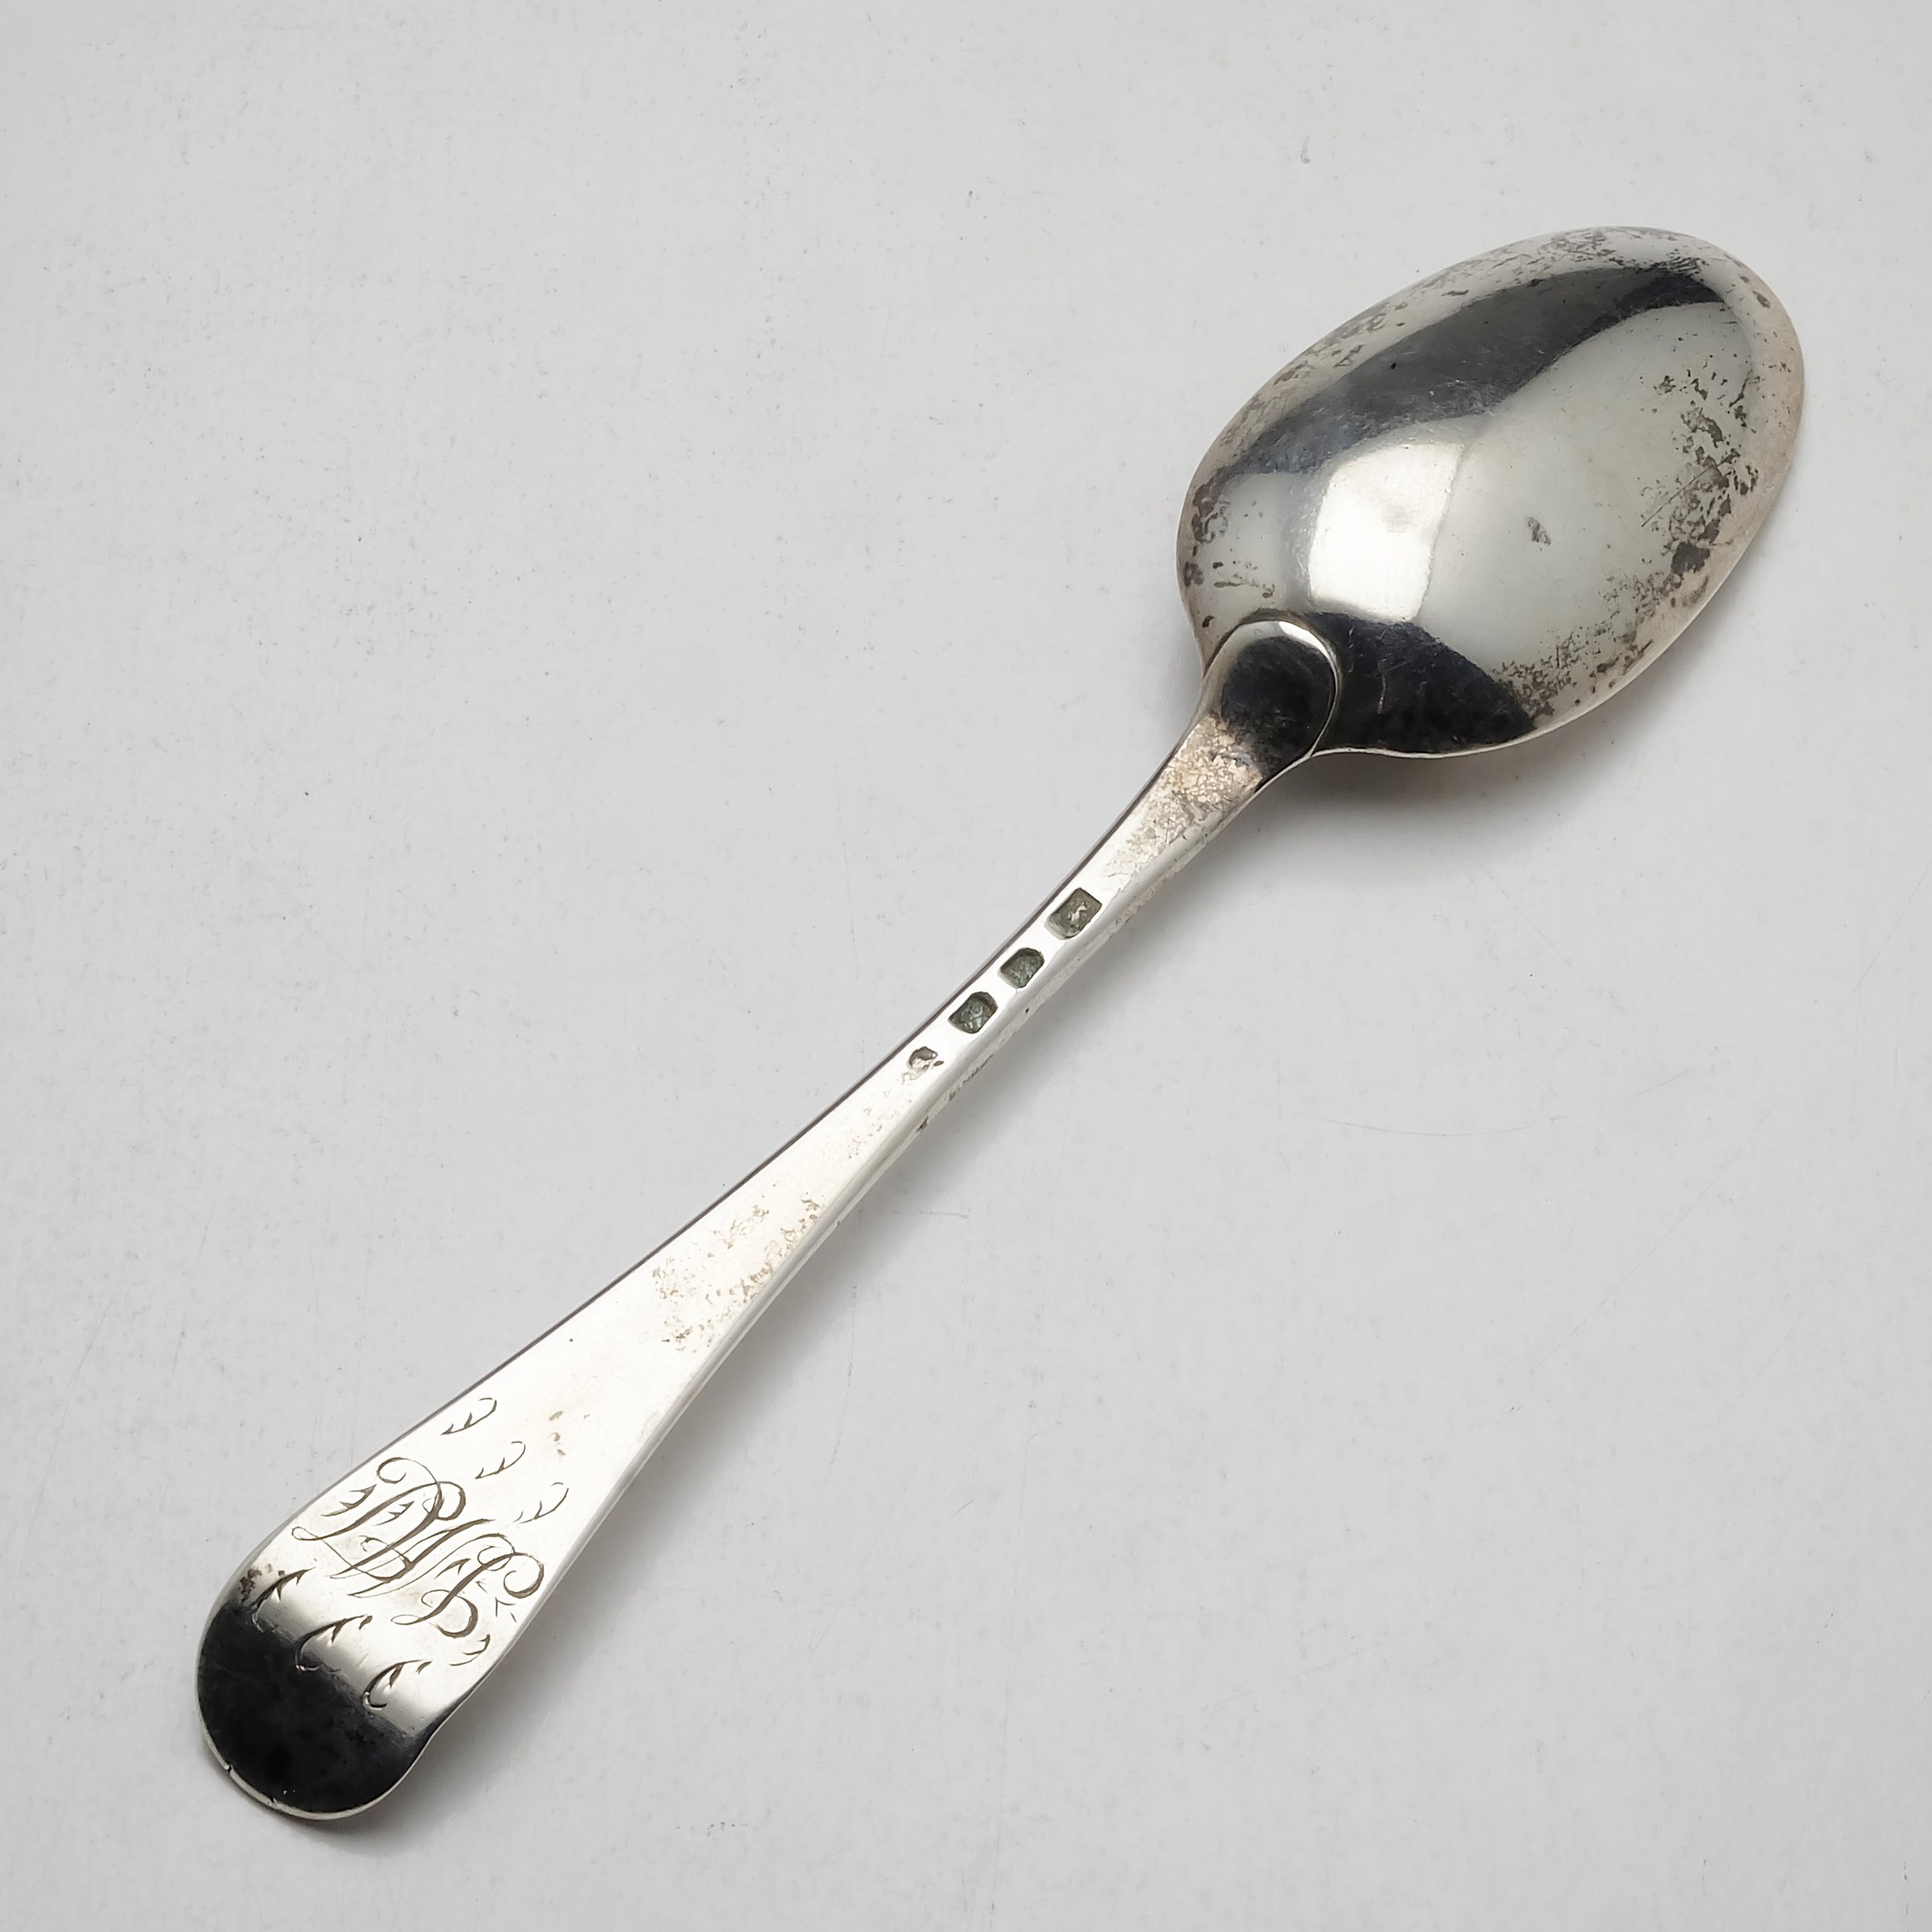 'George II Monogrammed Sterling Silver Spoon London IB 1756 55g'